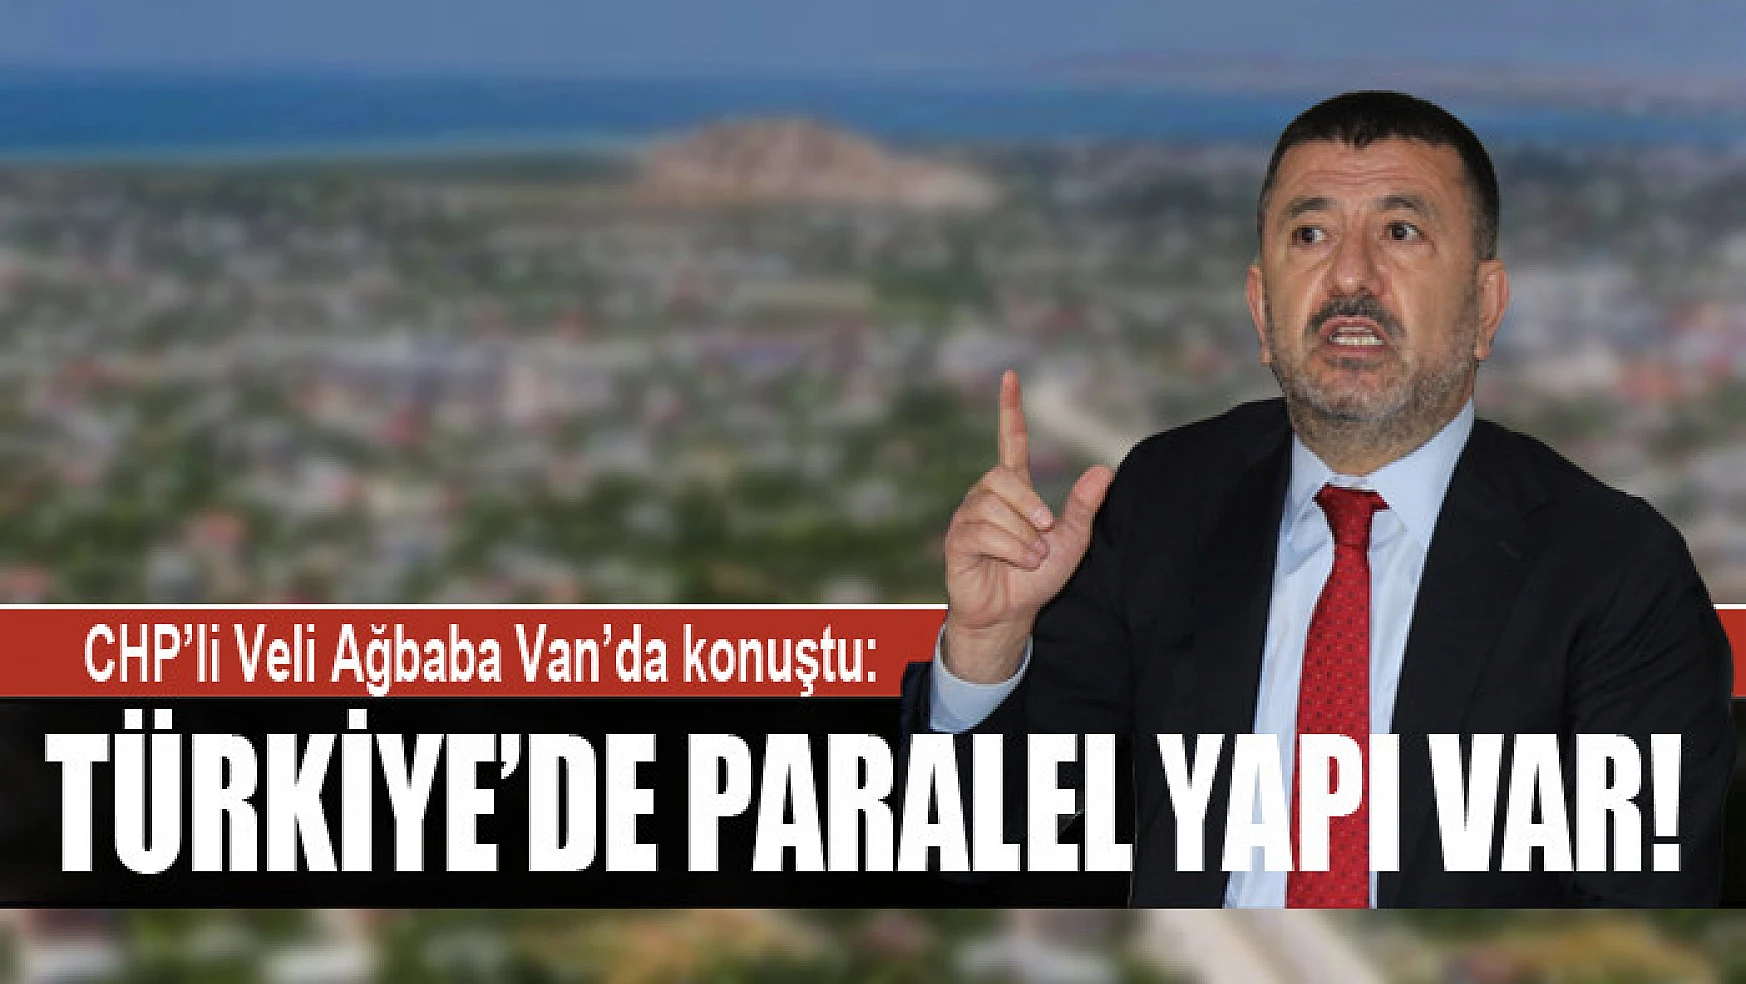 CHP'li Veli Ağbaba Van'da konuştu: Türkiye'de paralel yapı var!